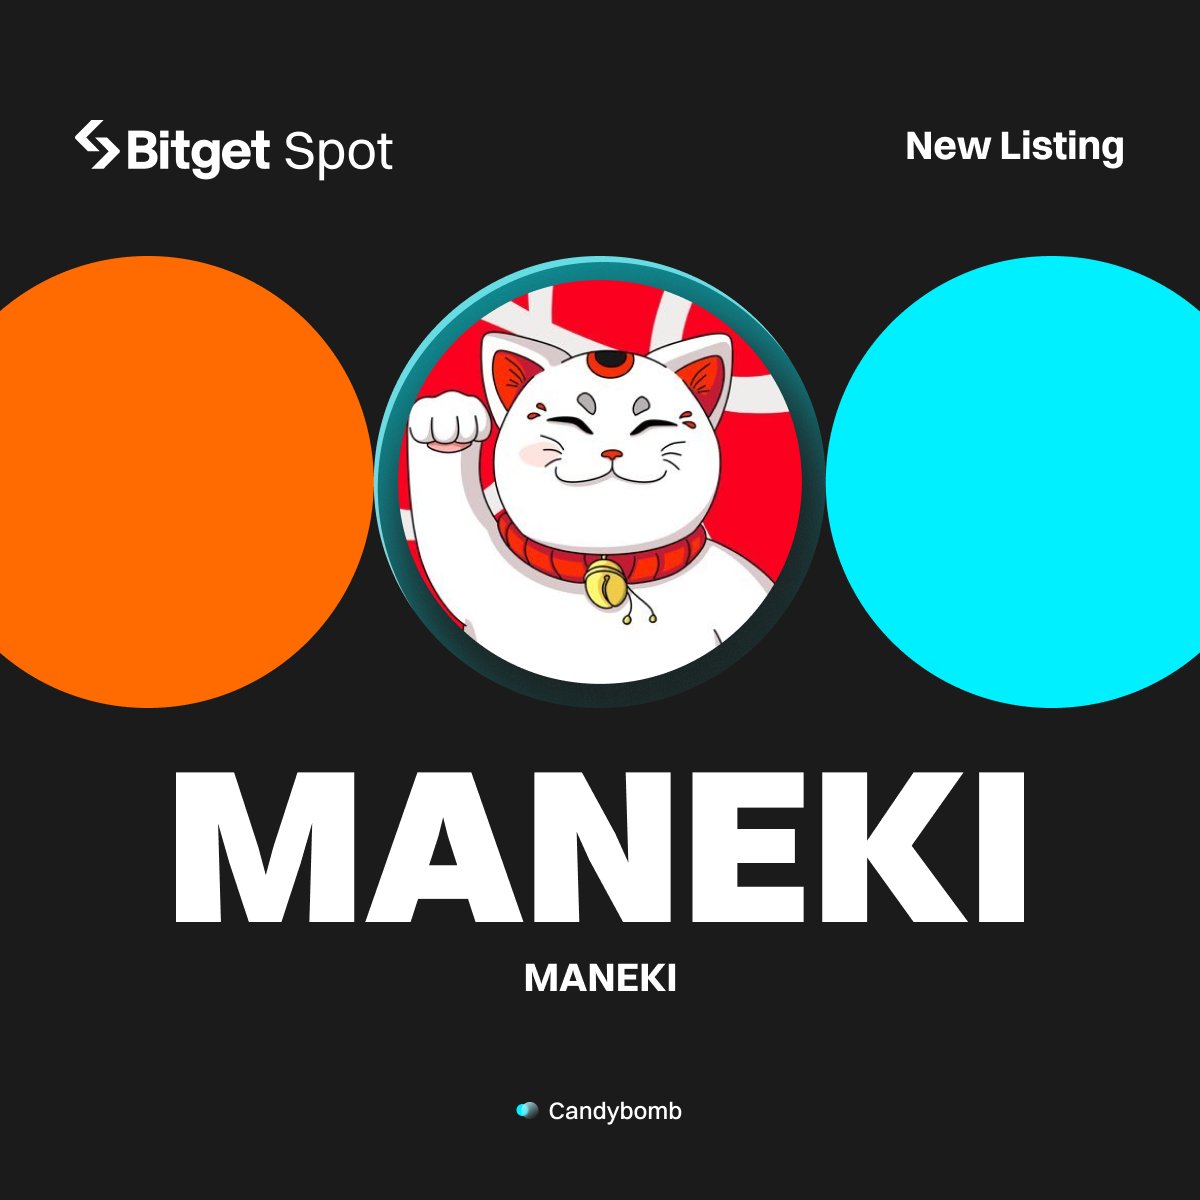 New Listing - $MANEKI @UnrevealedXYZ #Bitget will list MANEKI/USDT with $11,000 worth of $MANEKI up for grabs! 🔹Deposit: opened 🔹Trading starts: April 26, 12:00 PM (UTC) More details: bitget.com/en/support/art… #MANEKIlistBitget